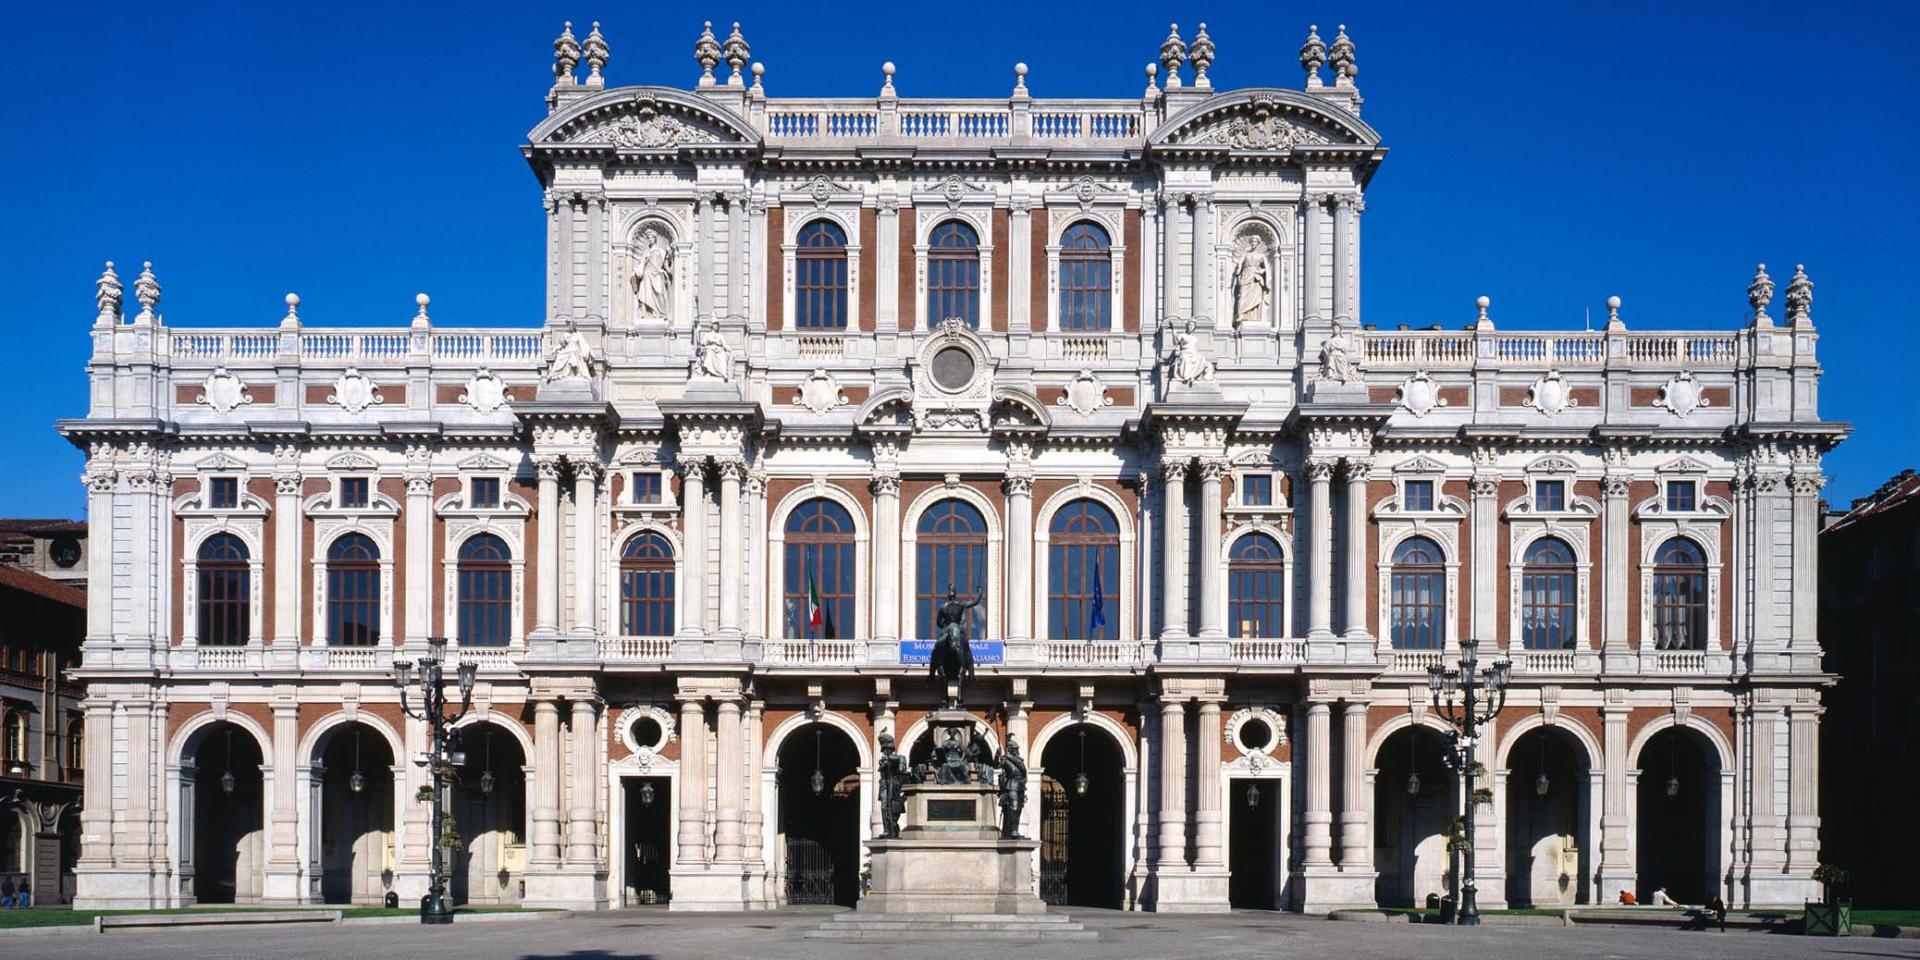 The Risorgimento National Musem of Torino